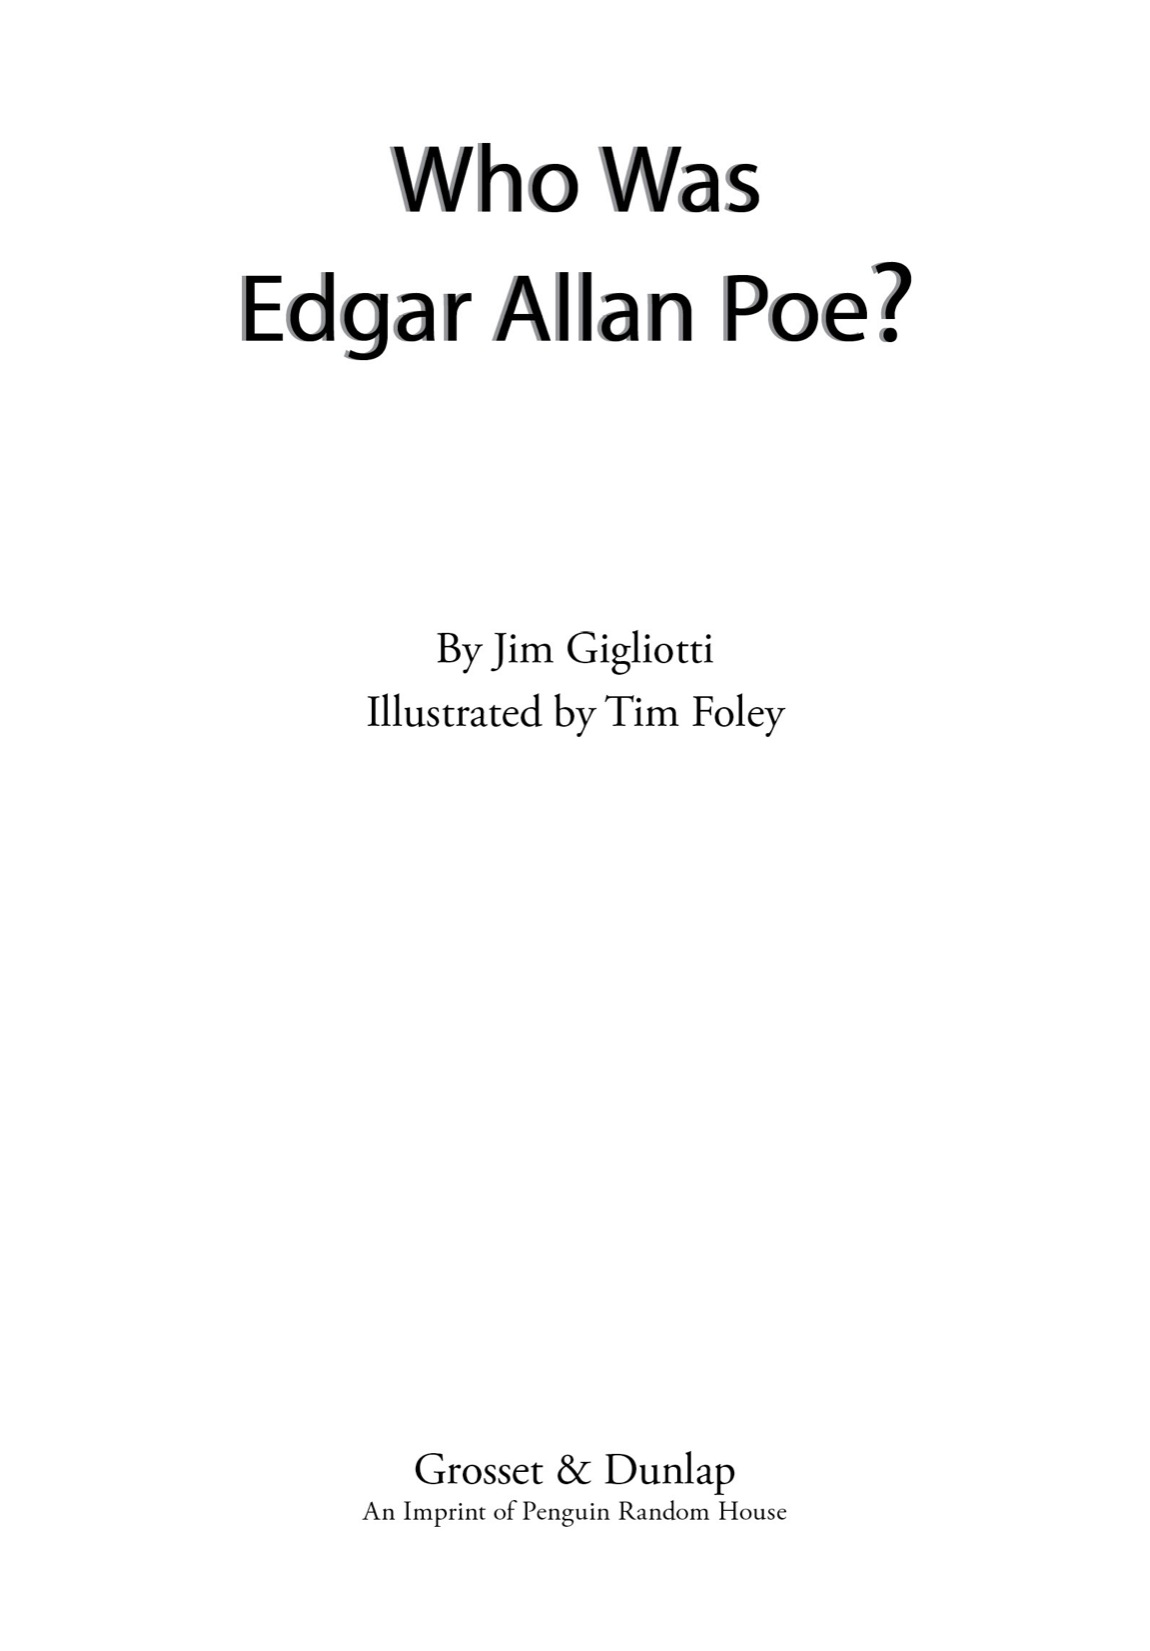 Who was Edgar Allan Poe - image 2